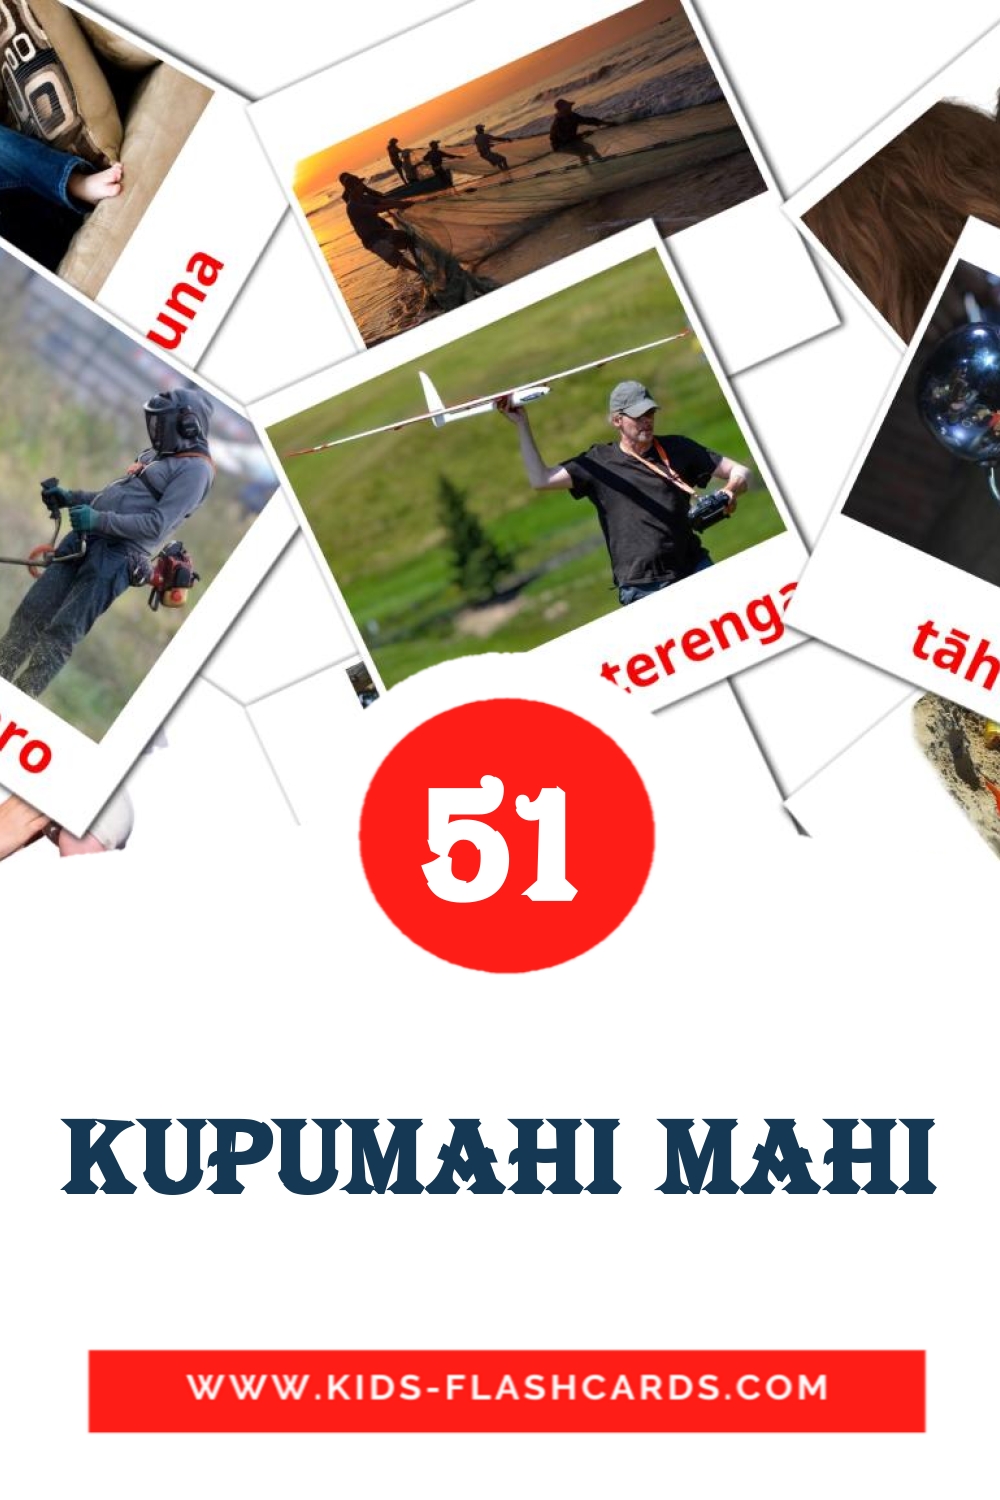 51 tarjetas didacticas de Kupumahi mahi para el jardín de infancia en maorí